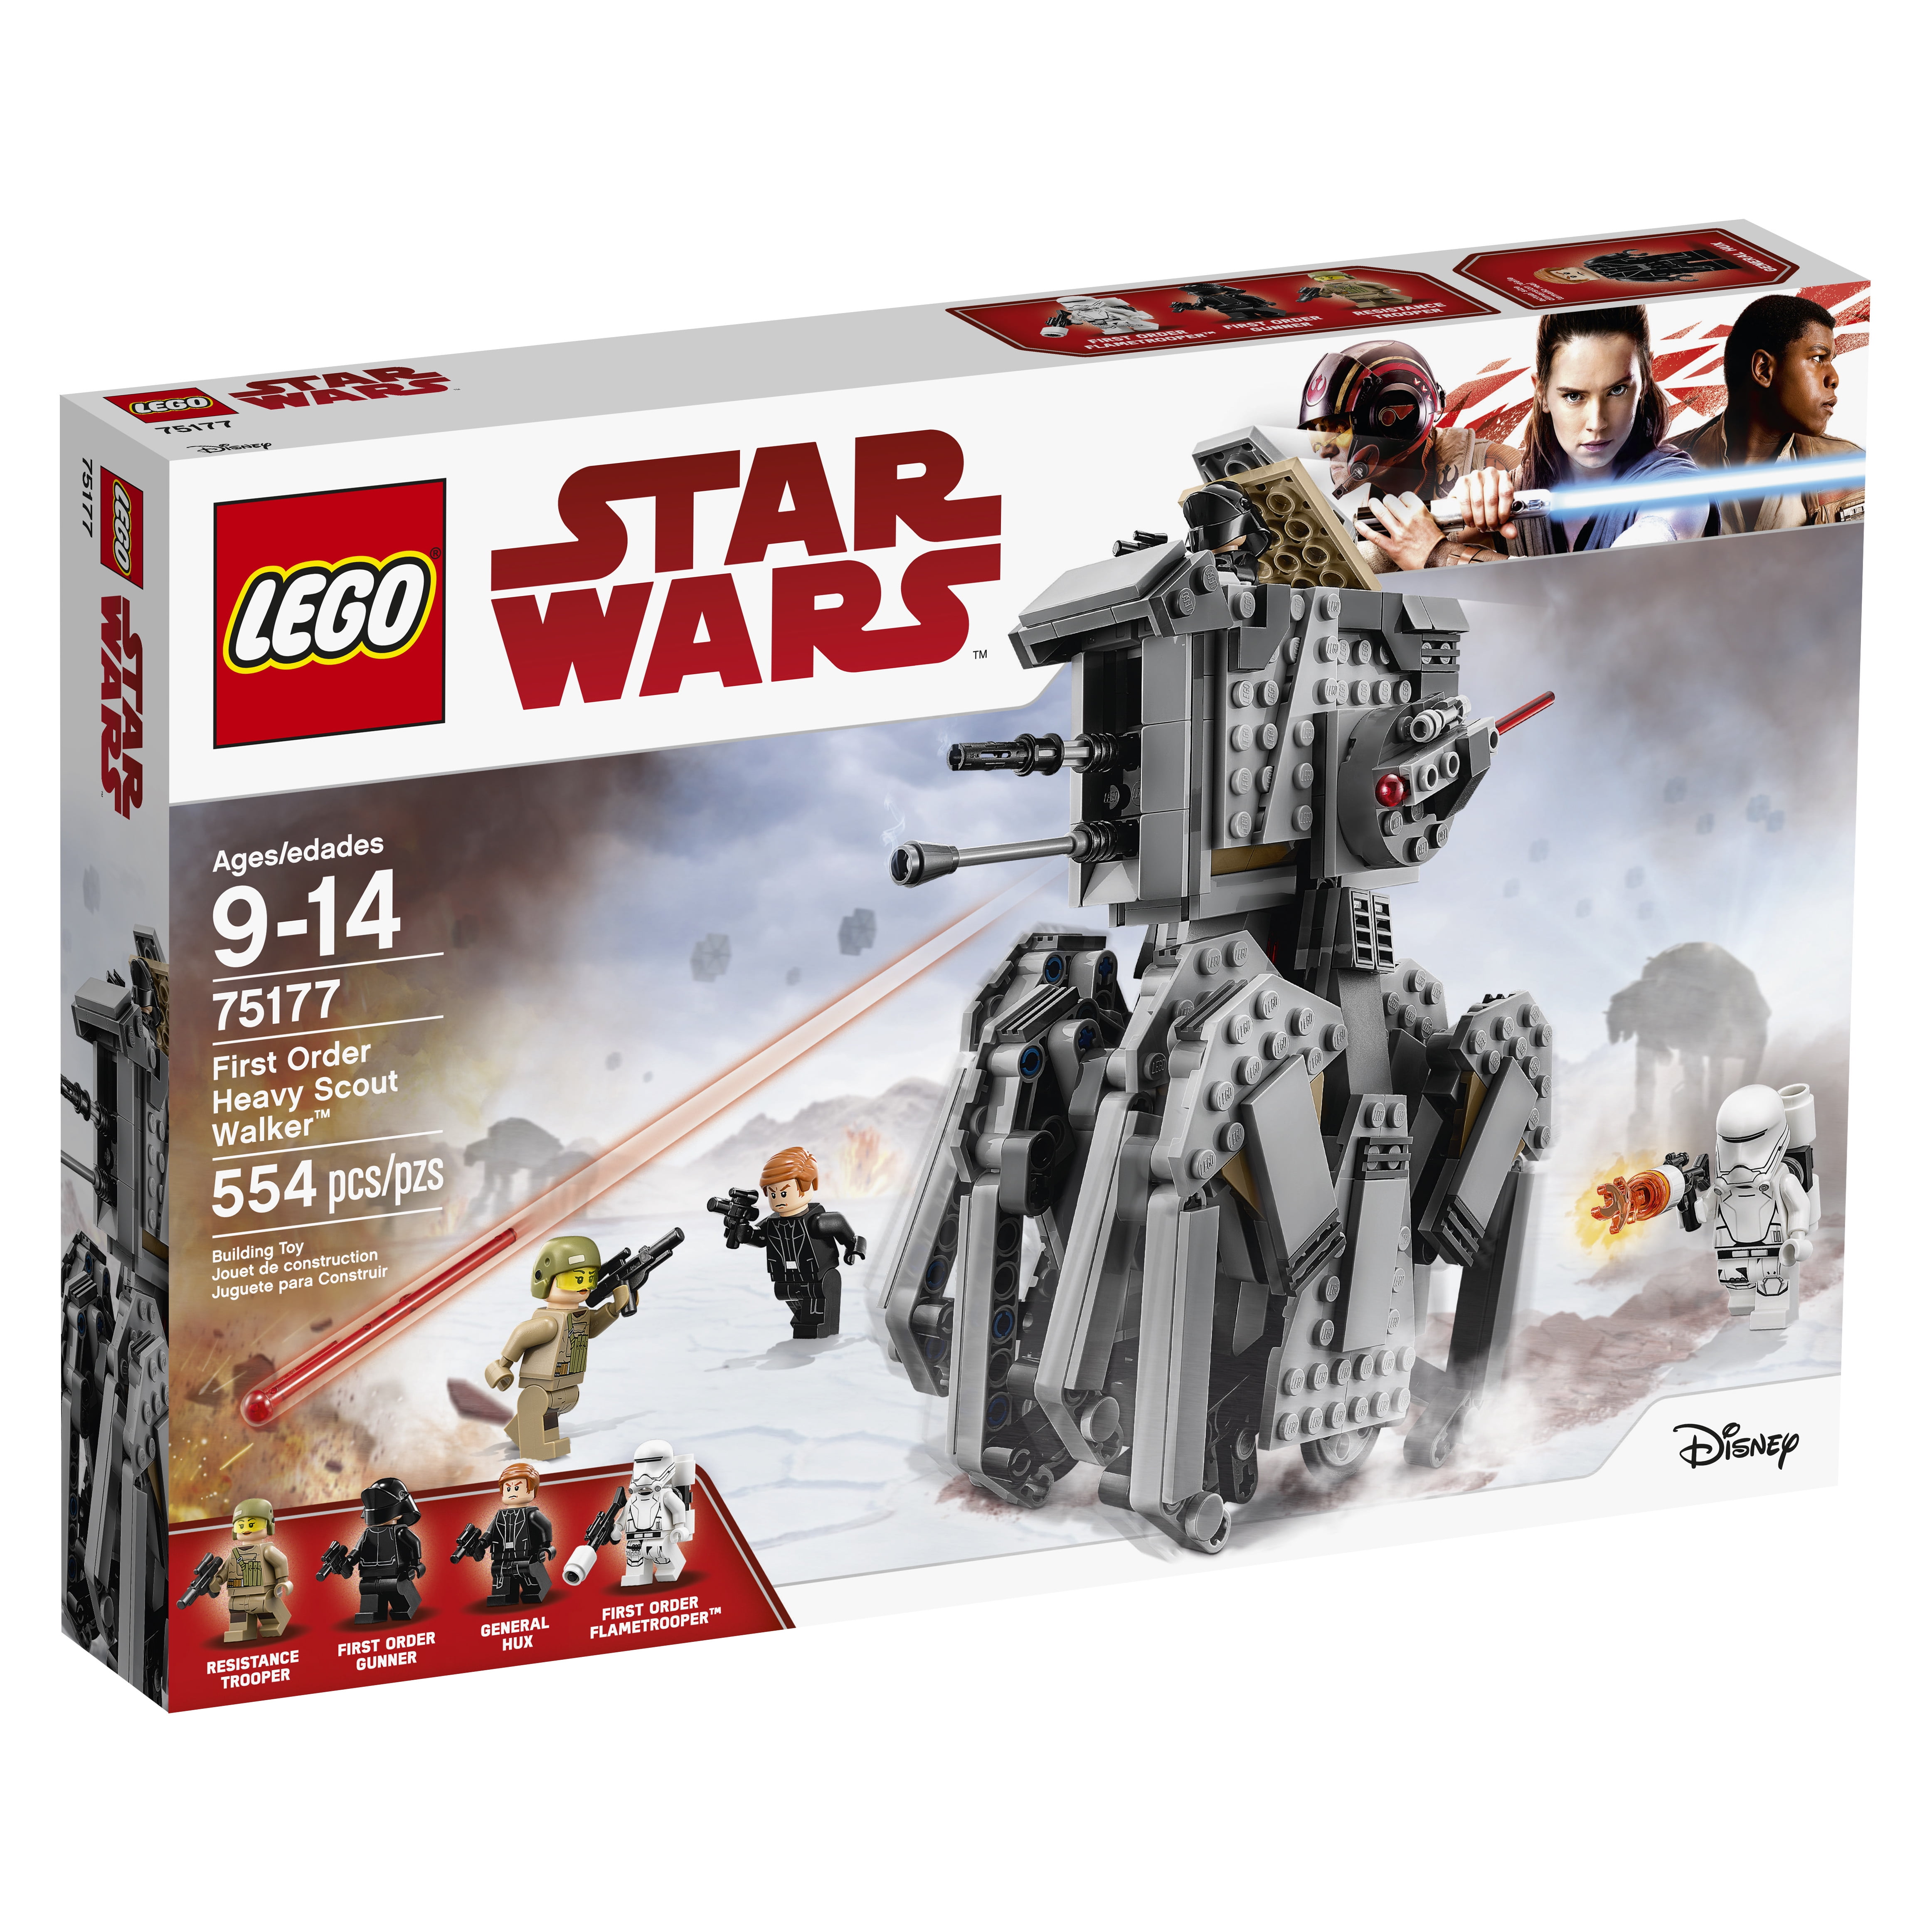 Husk vest sadel LEGO Star Wars TM First Order Heavy Scout Walker™ 75177 - Walmart.com